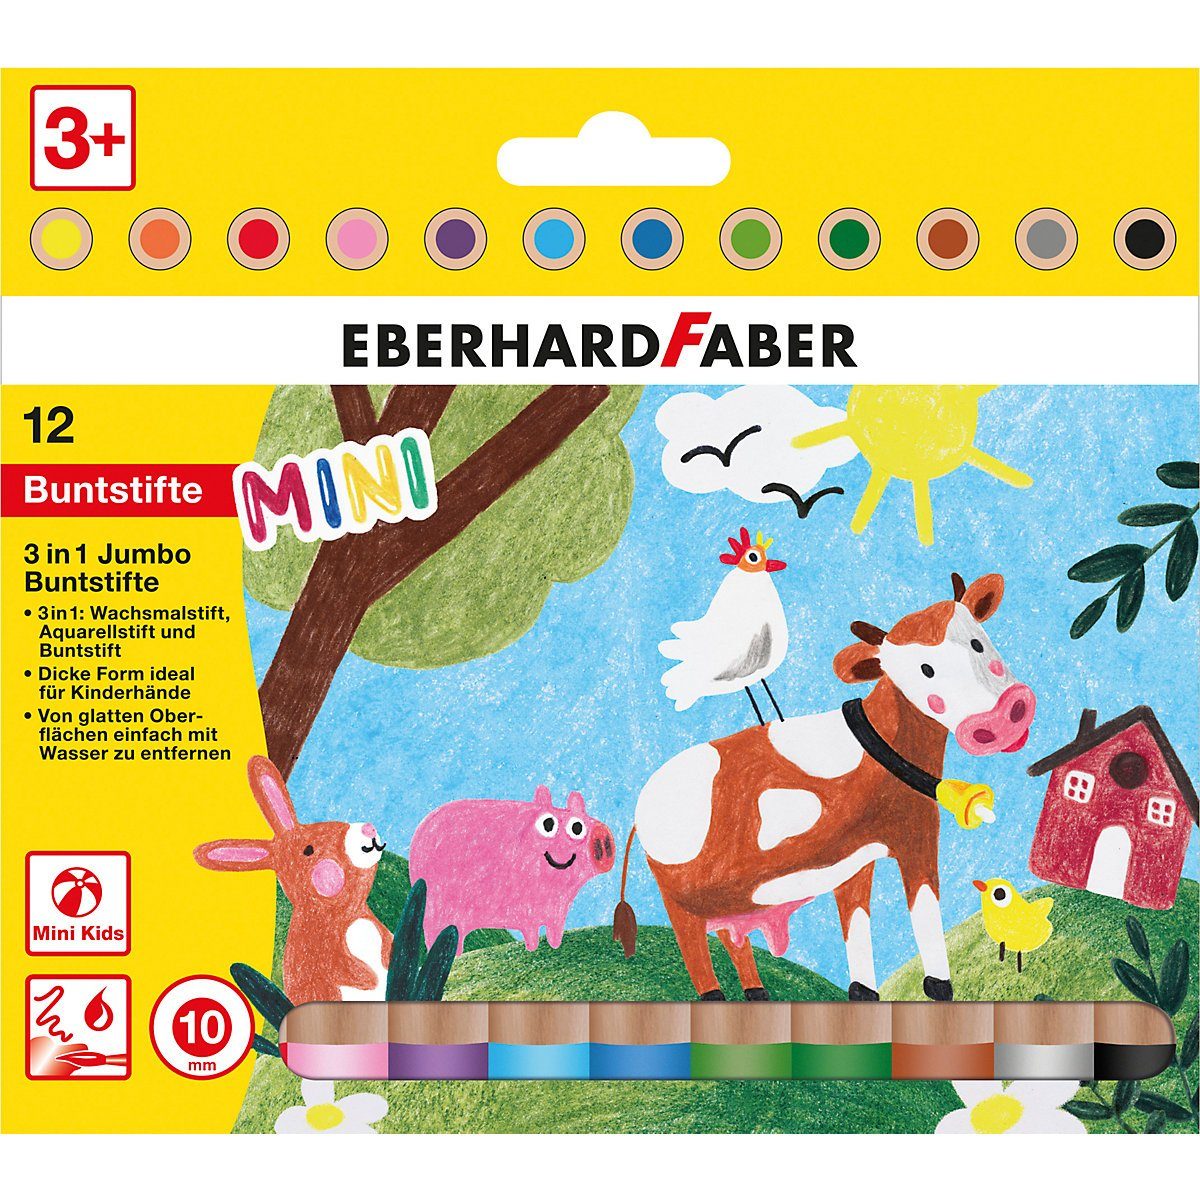 Eberhard Faber Buntstift Mini Kids 3in1 Jumbo-Buntstifte, 12 Farben